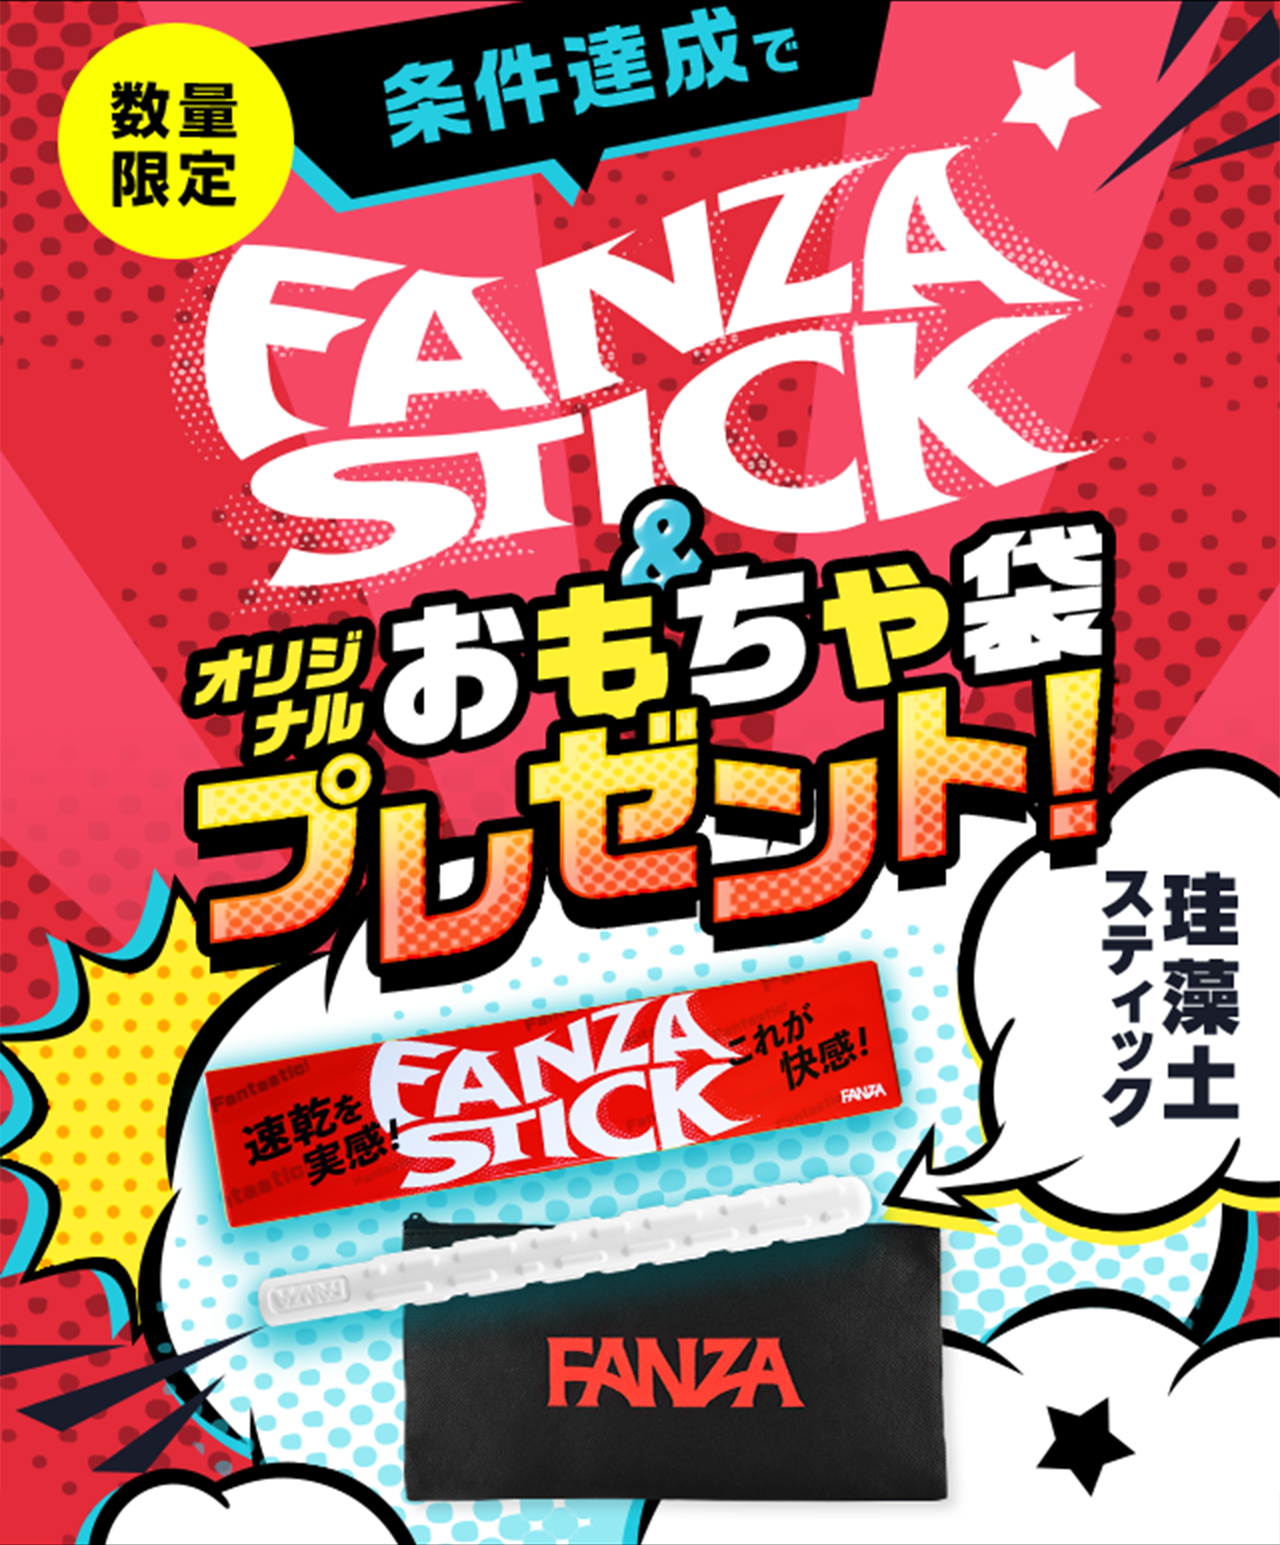 Fanza マーケット プレイス